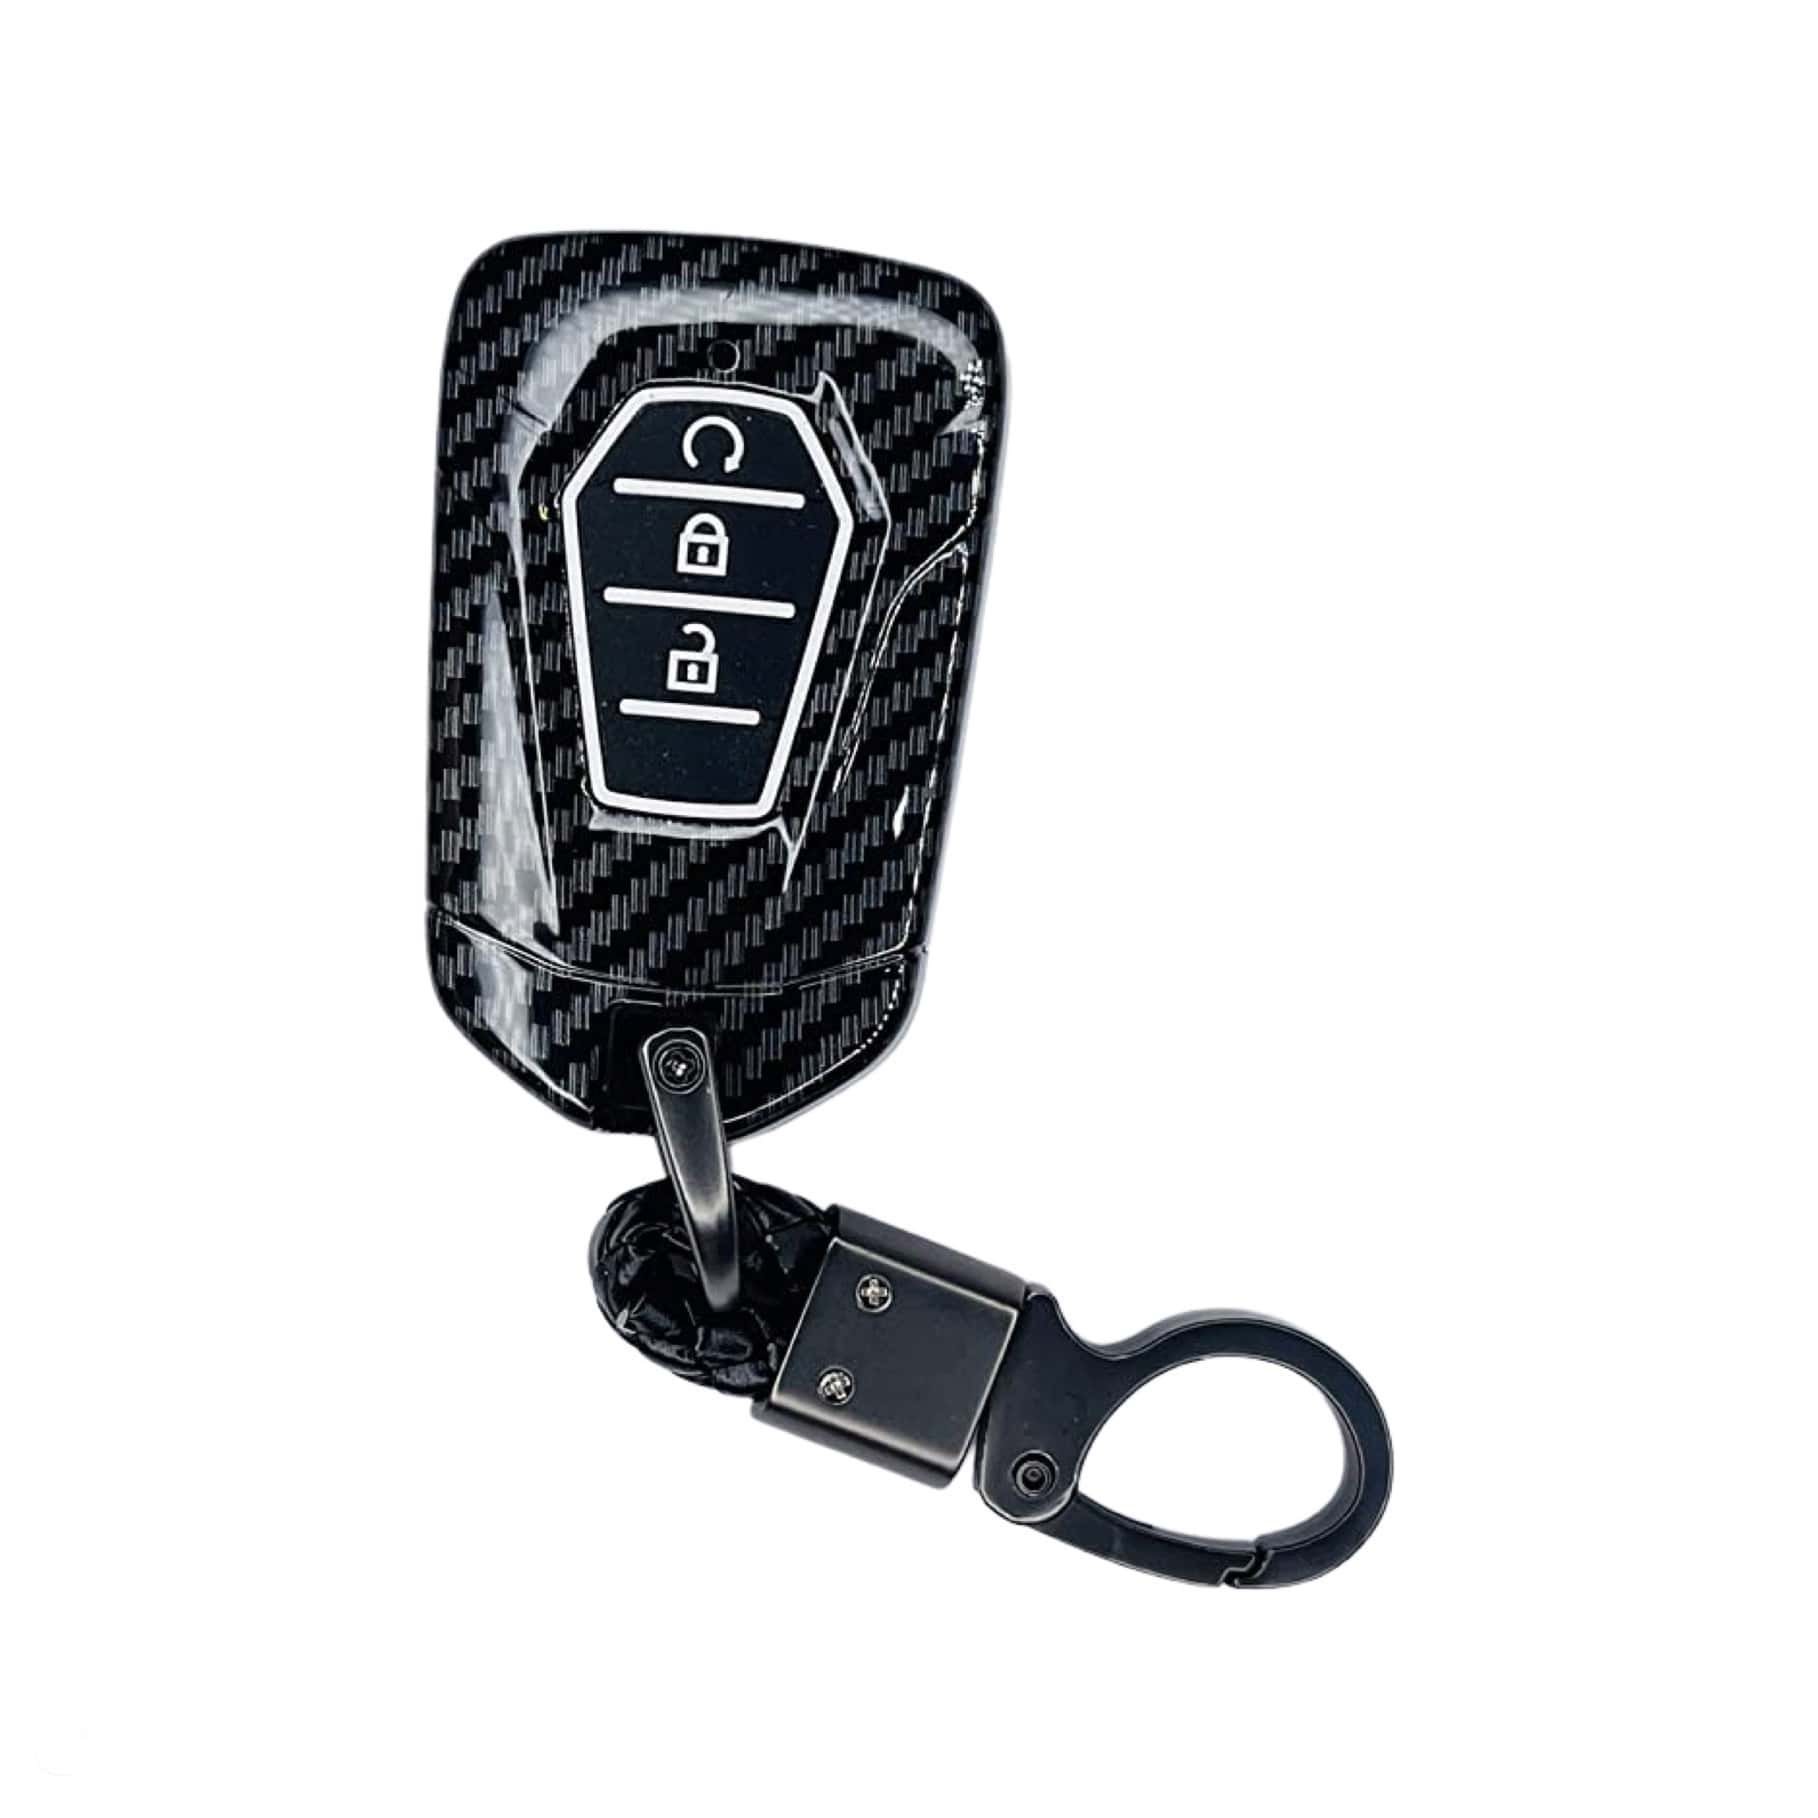 Isuzu Key cover carbon fibre black | D-Max and MU-X | Isuzu accessories - Keysleeves 